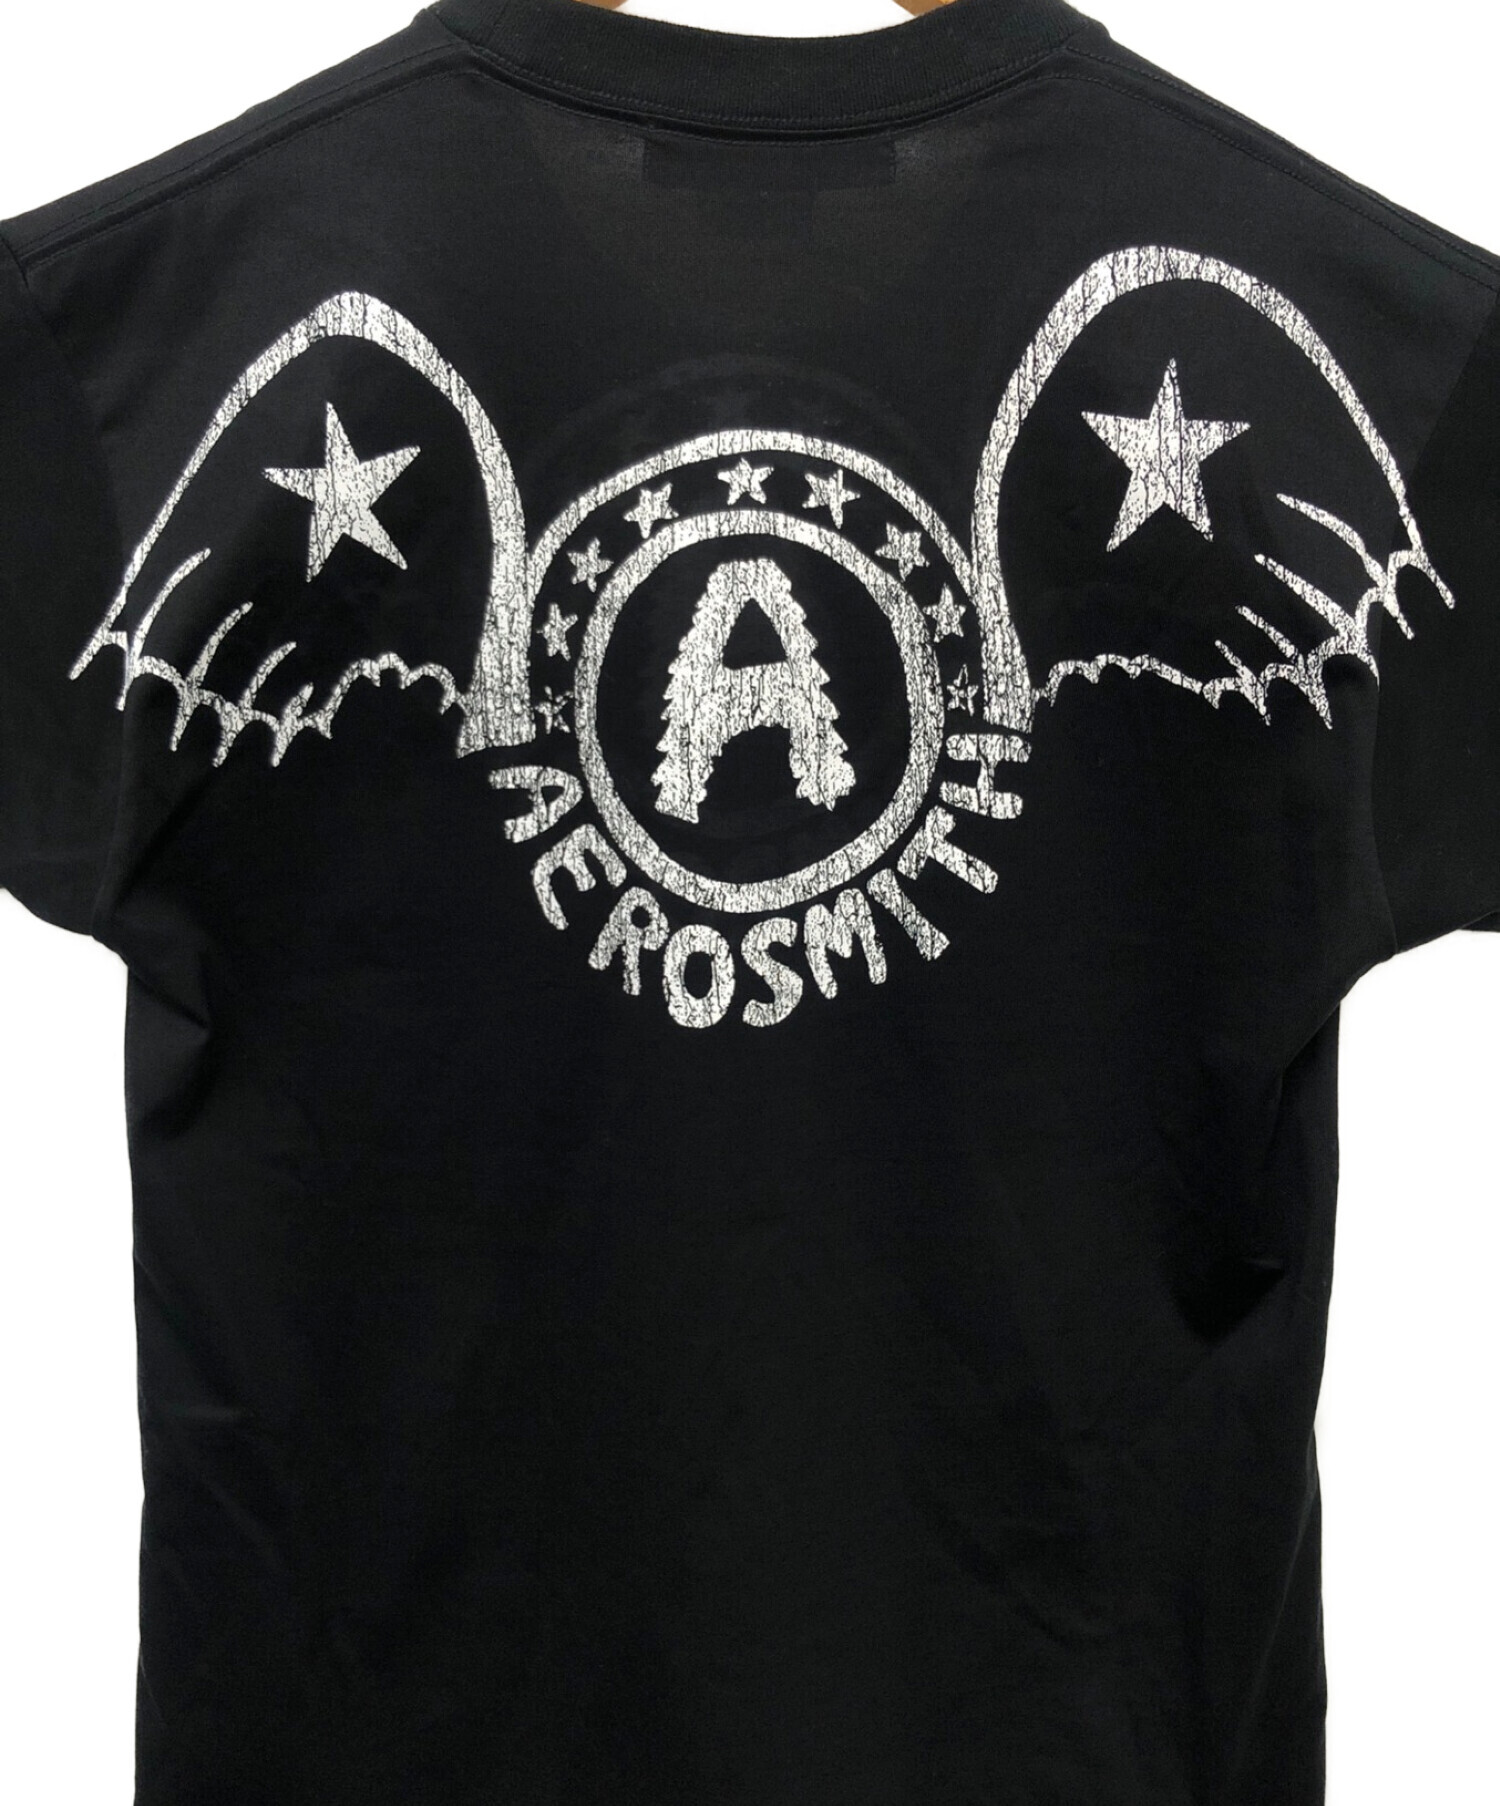 JUNYA WATANABE COMME des GARCONS (ジュンヤワタナベ コムデギャルソン) Aerosmith t-shirt ブラック  サイズ:S